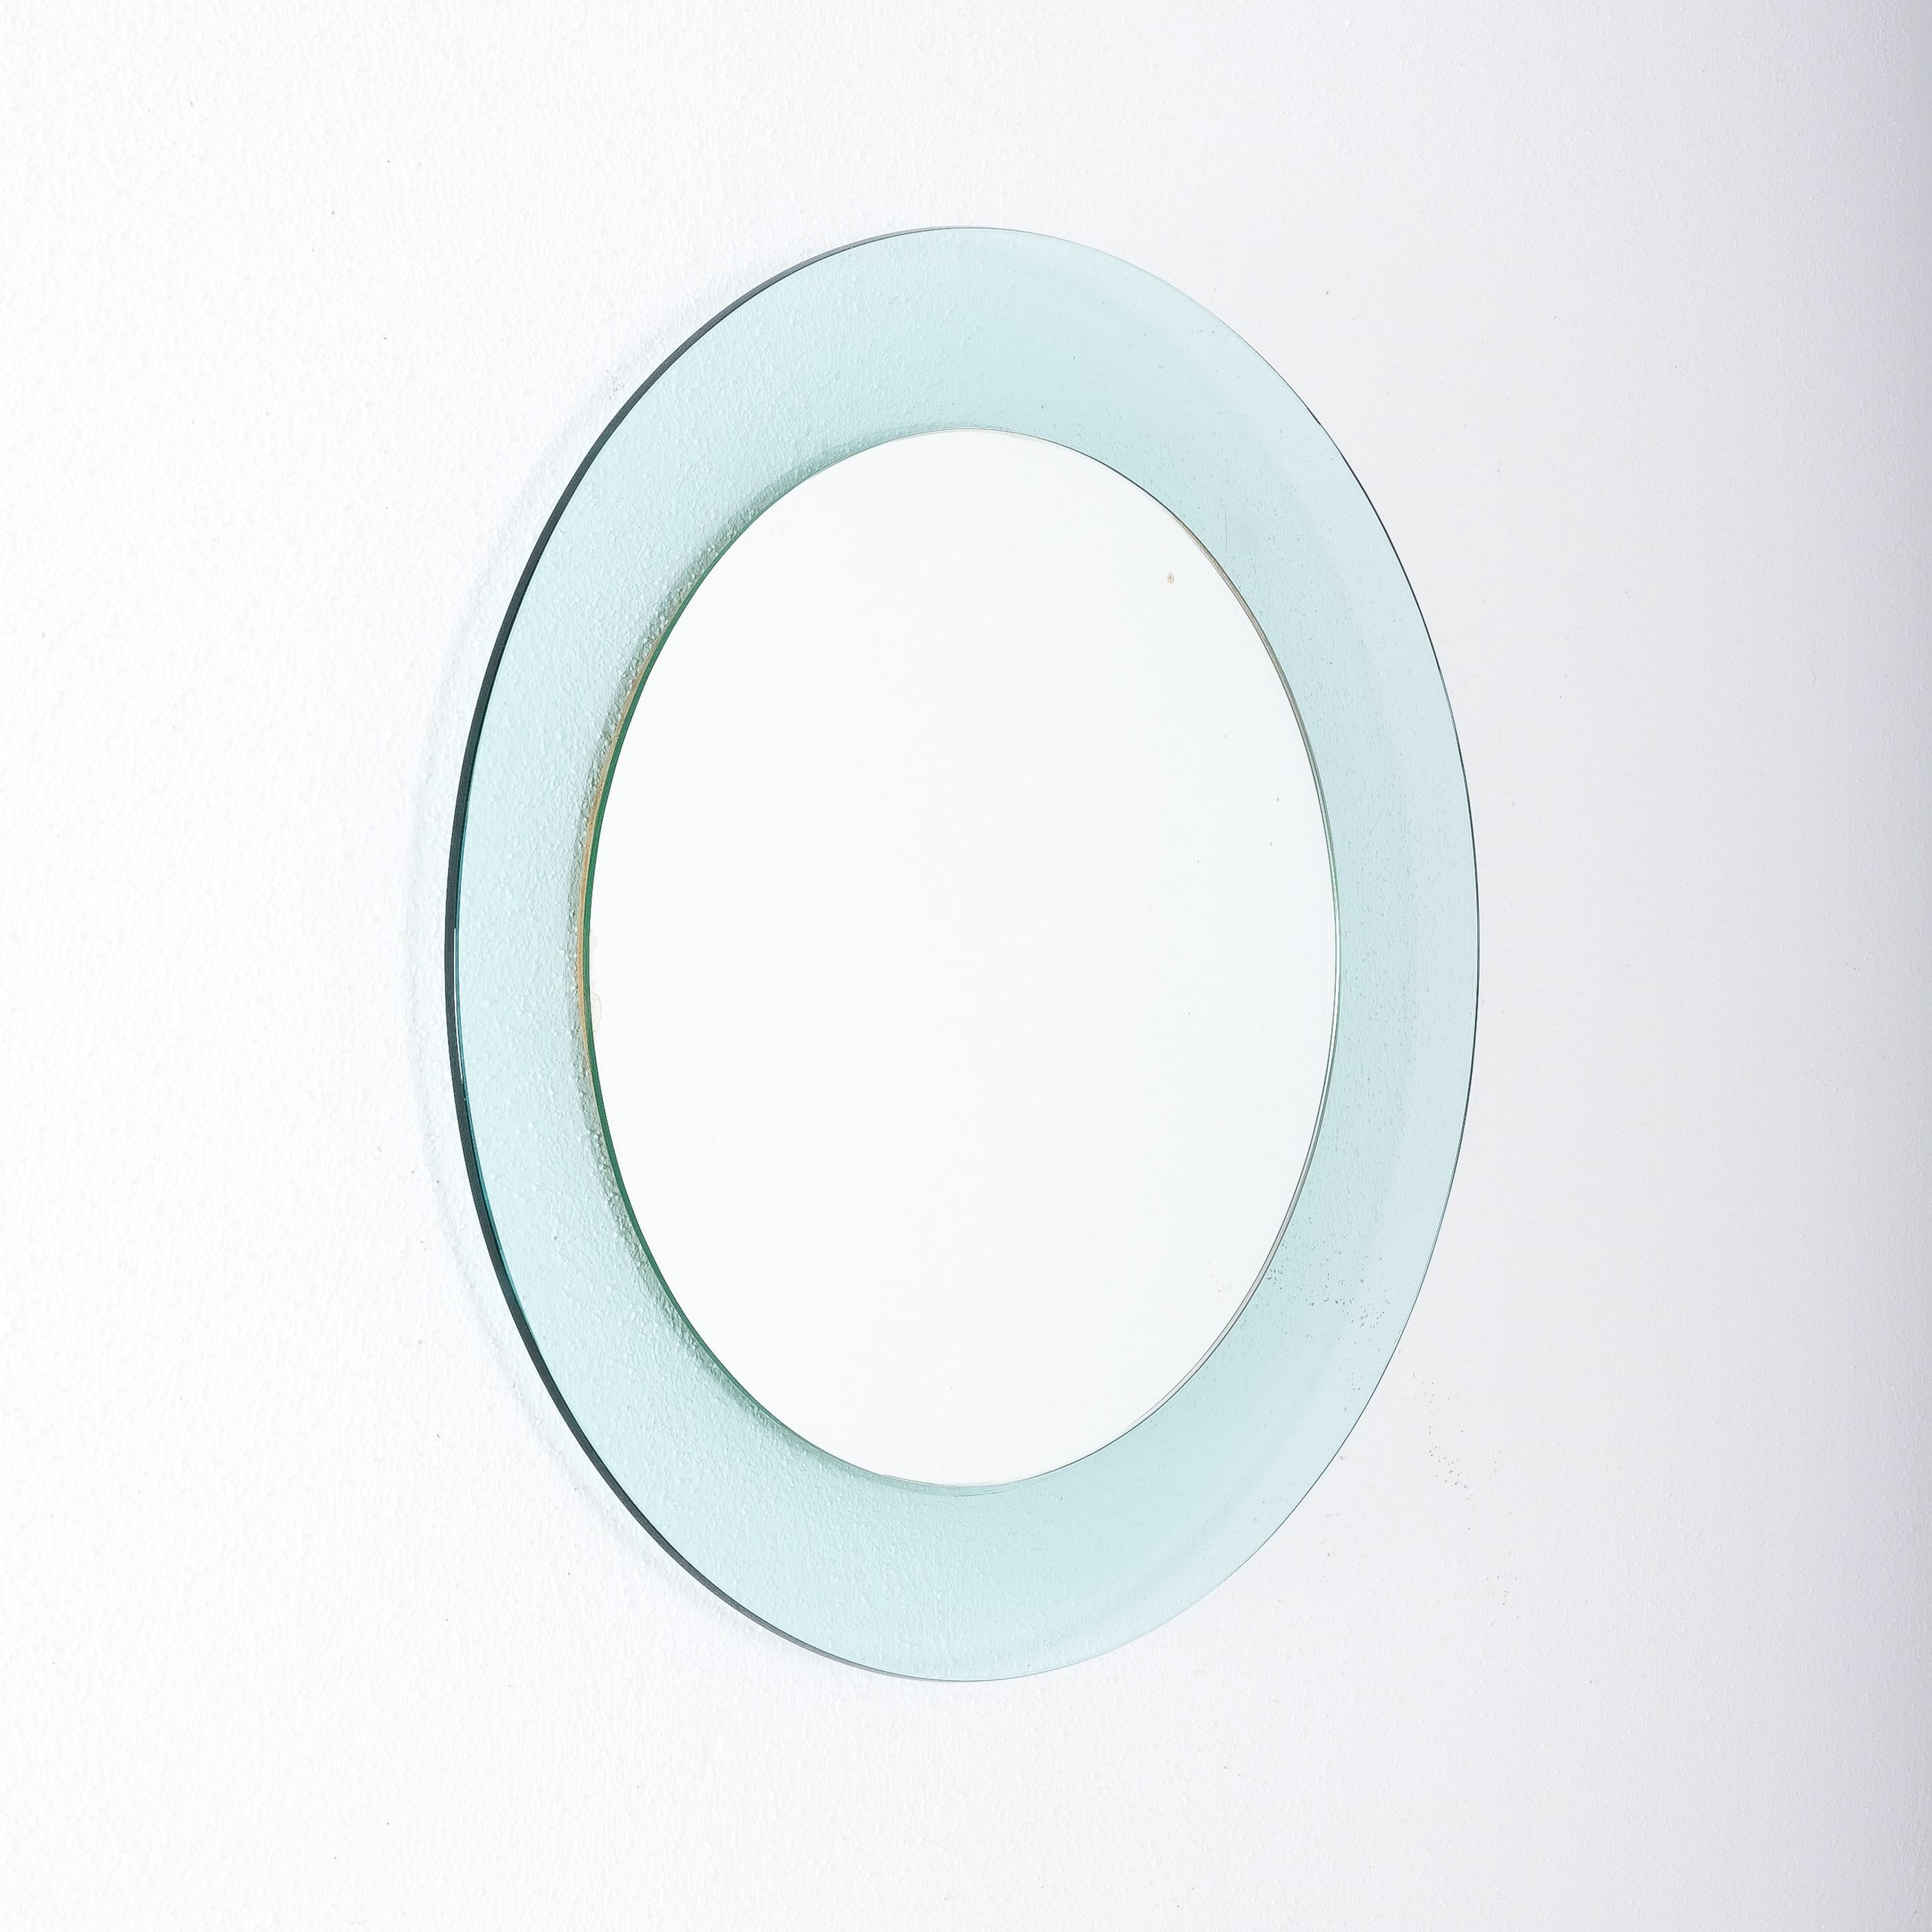 Mod. 1699 Spiegel von Max Ingrand, Fontana Arte, Italien.

Max Ingrand runder blauer Spiegel Fontana Arte Modell 1699, Italien, um 1968. Elegantes hellblau-türkisfarbenes, geschwungenes und abgeschrägtes Glas umrahmt von verspiegeltem Glas. Guter